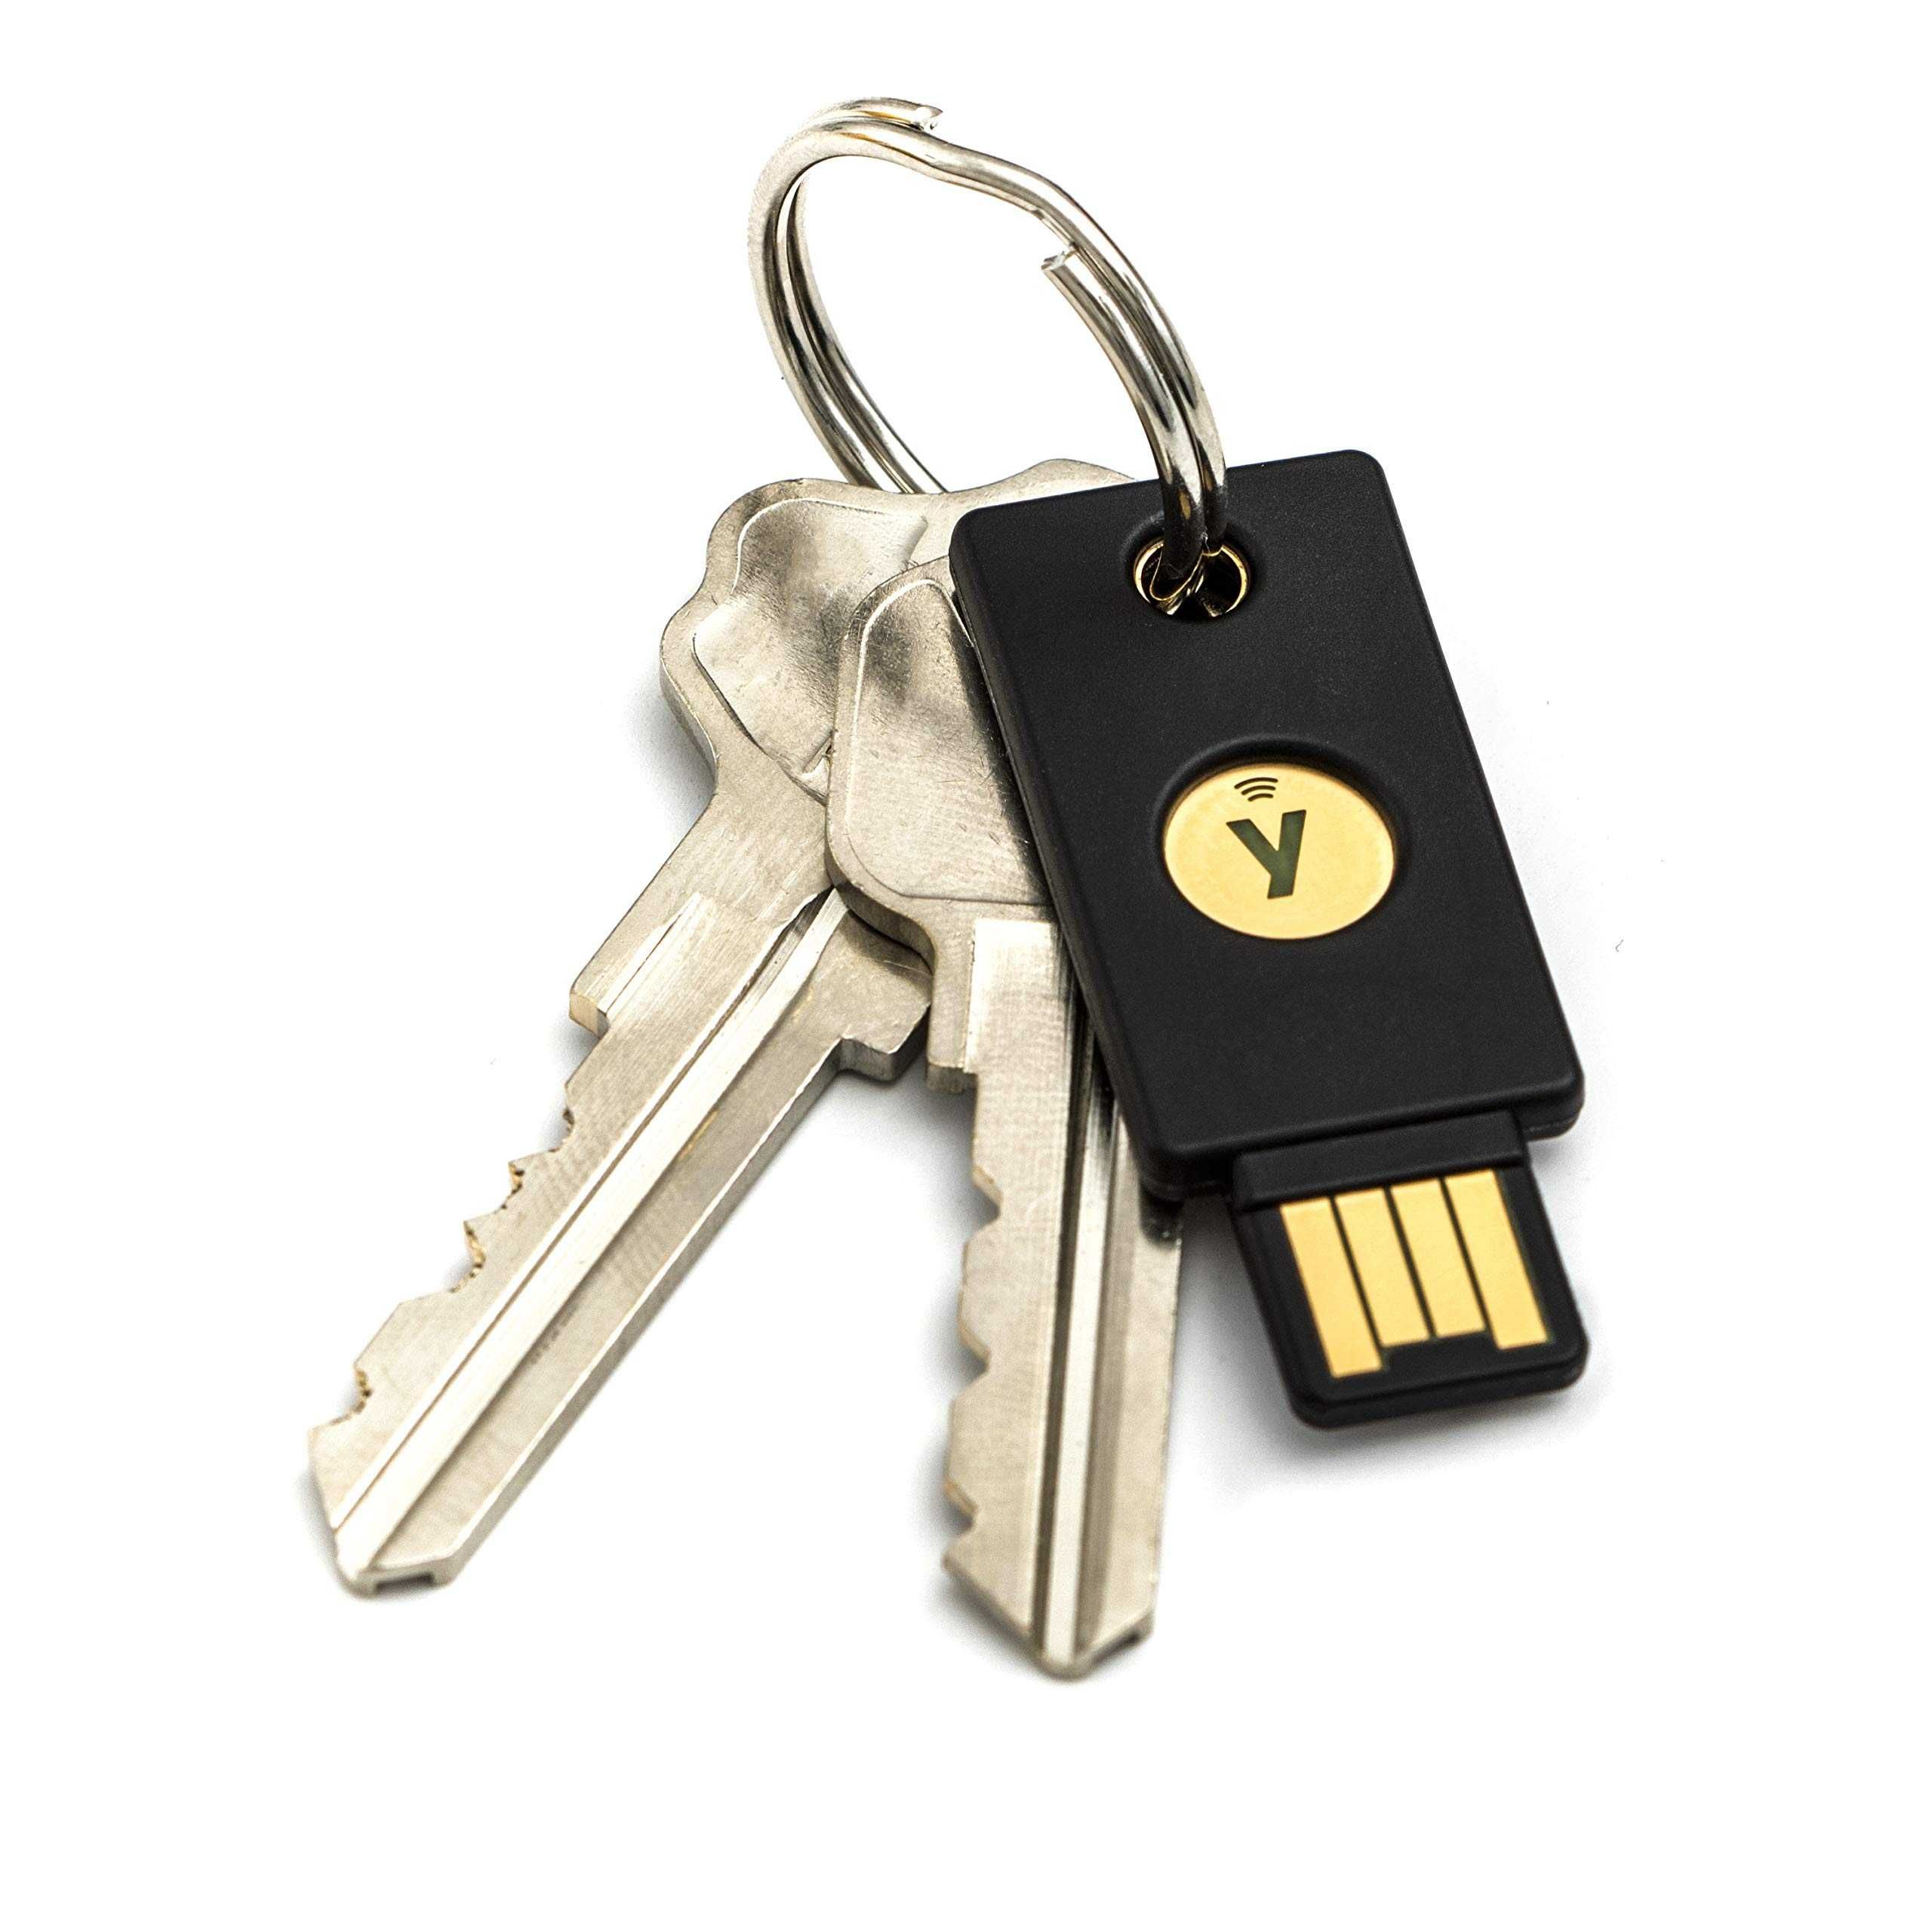 Аппаратный ключ Yubikey 5 NFC- устройства для защиты криптовалюты